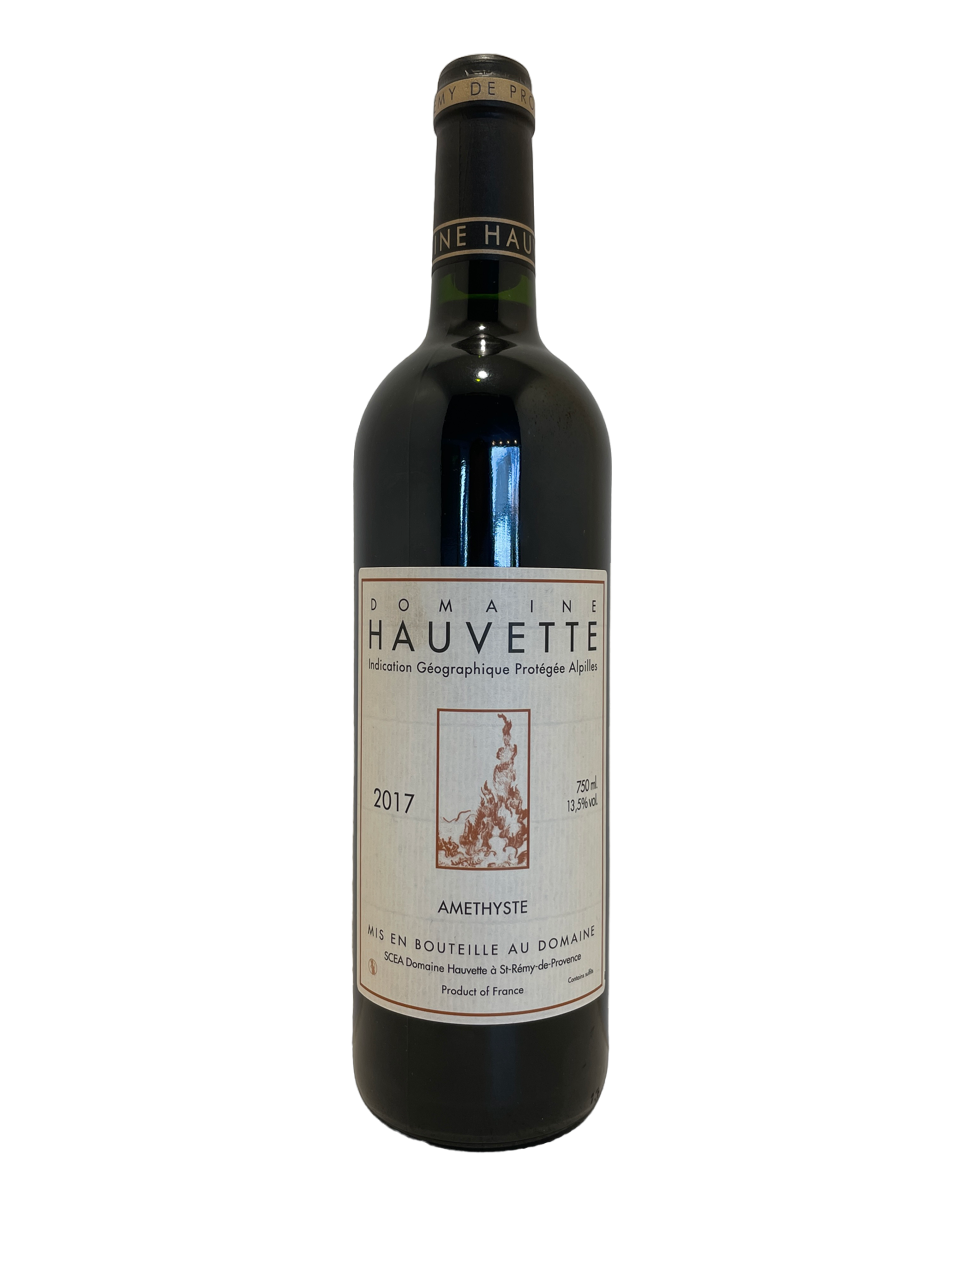 provence vin biodynamie organic wine igp alpilles amethyste domaine hauvette dominique hauvette